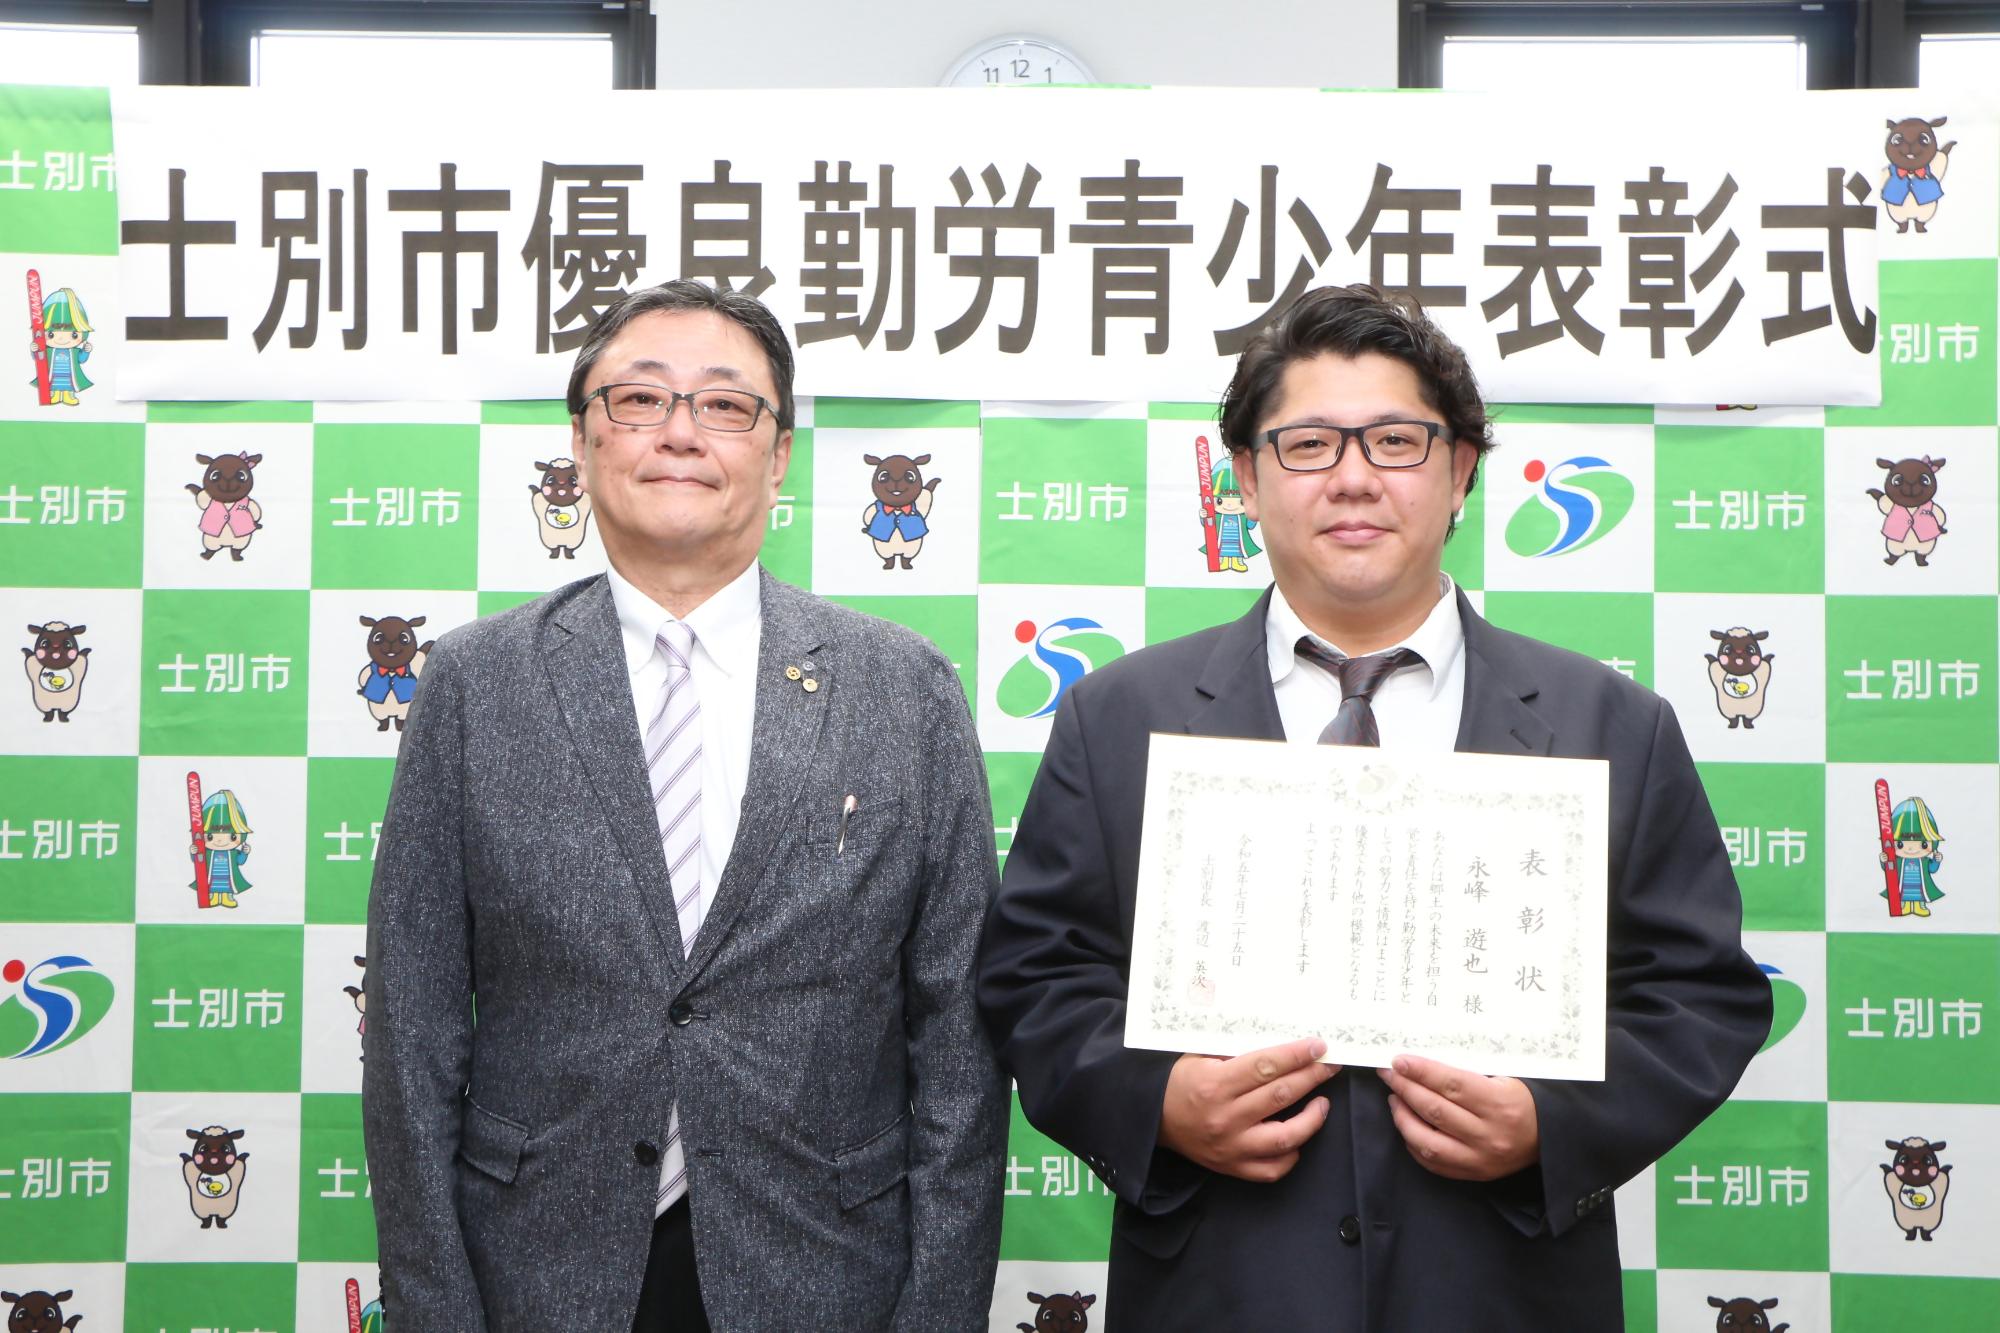 士別市優良勤労青少年表彰受賞者永峰さんと士別軌道井口代表取締役